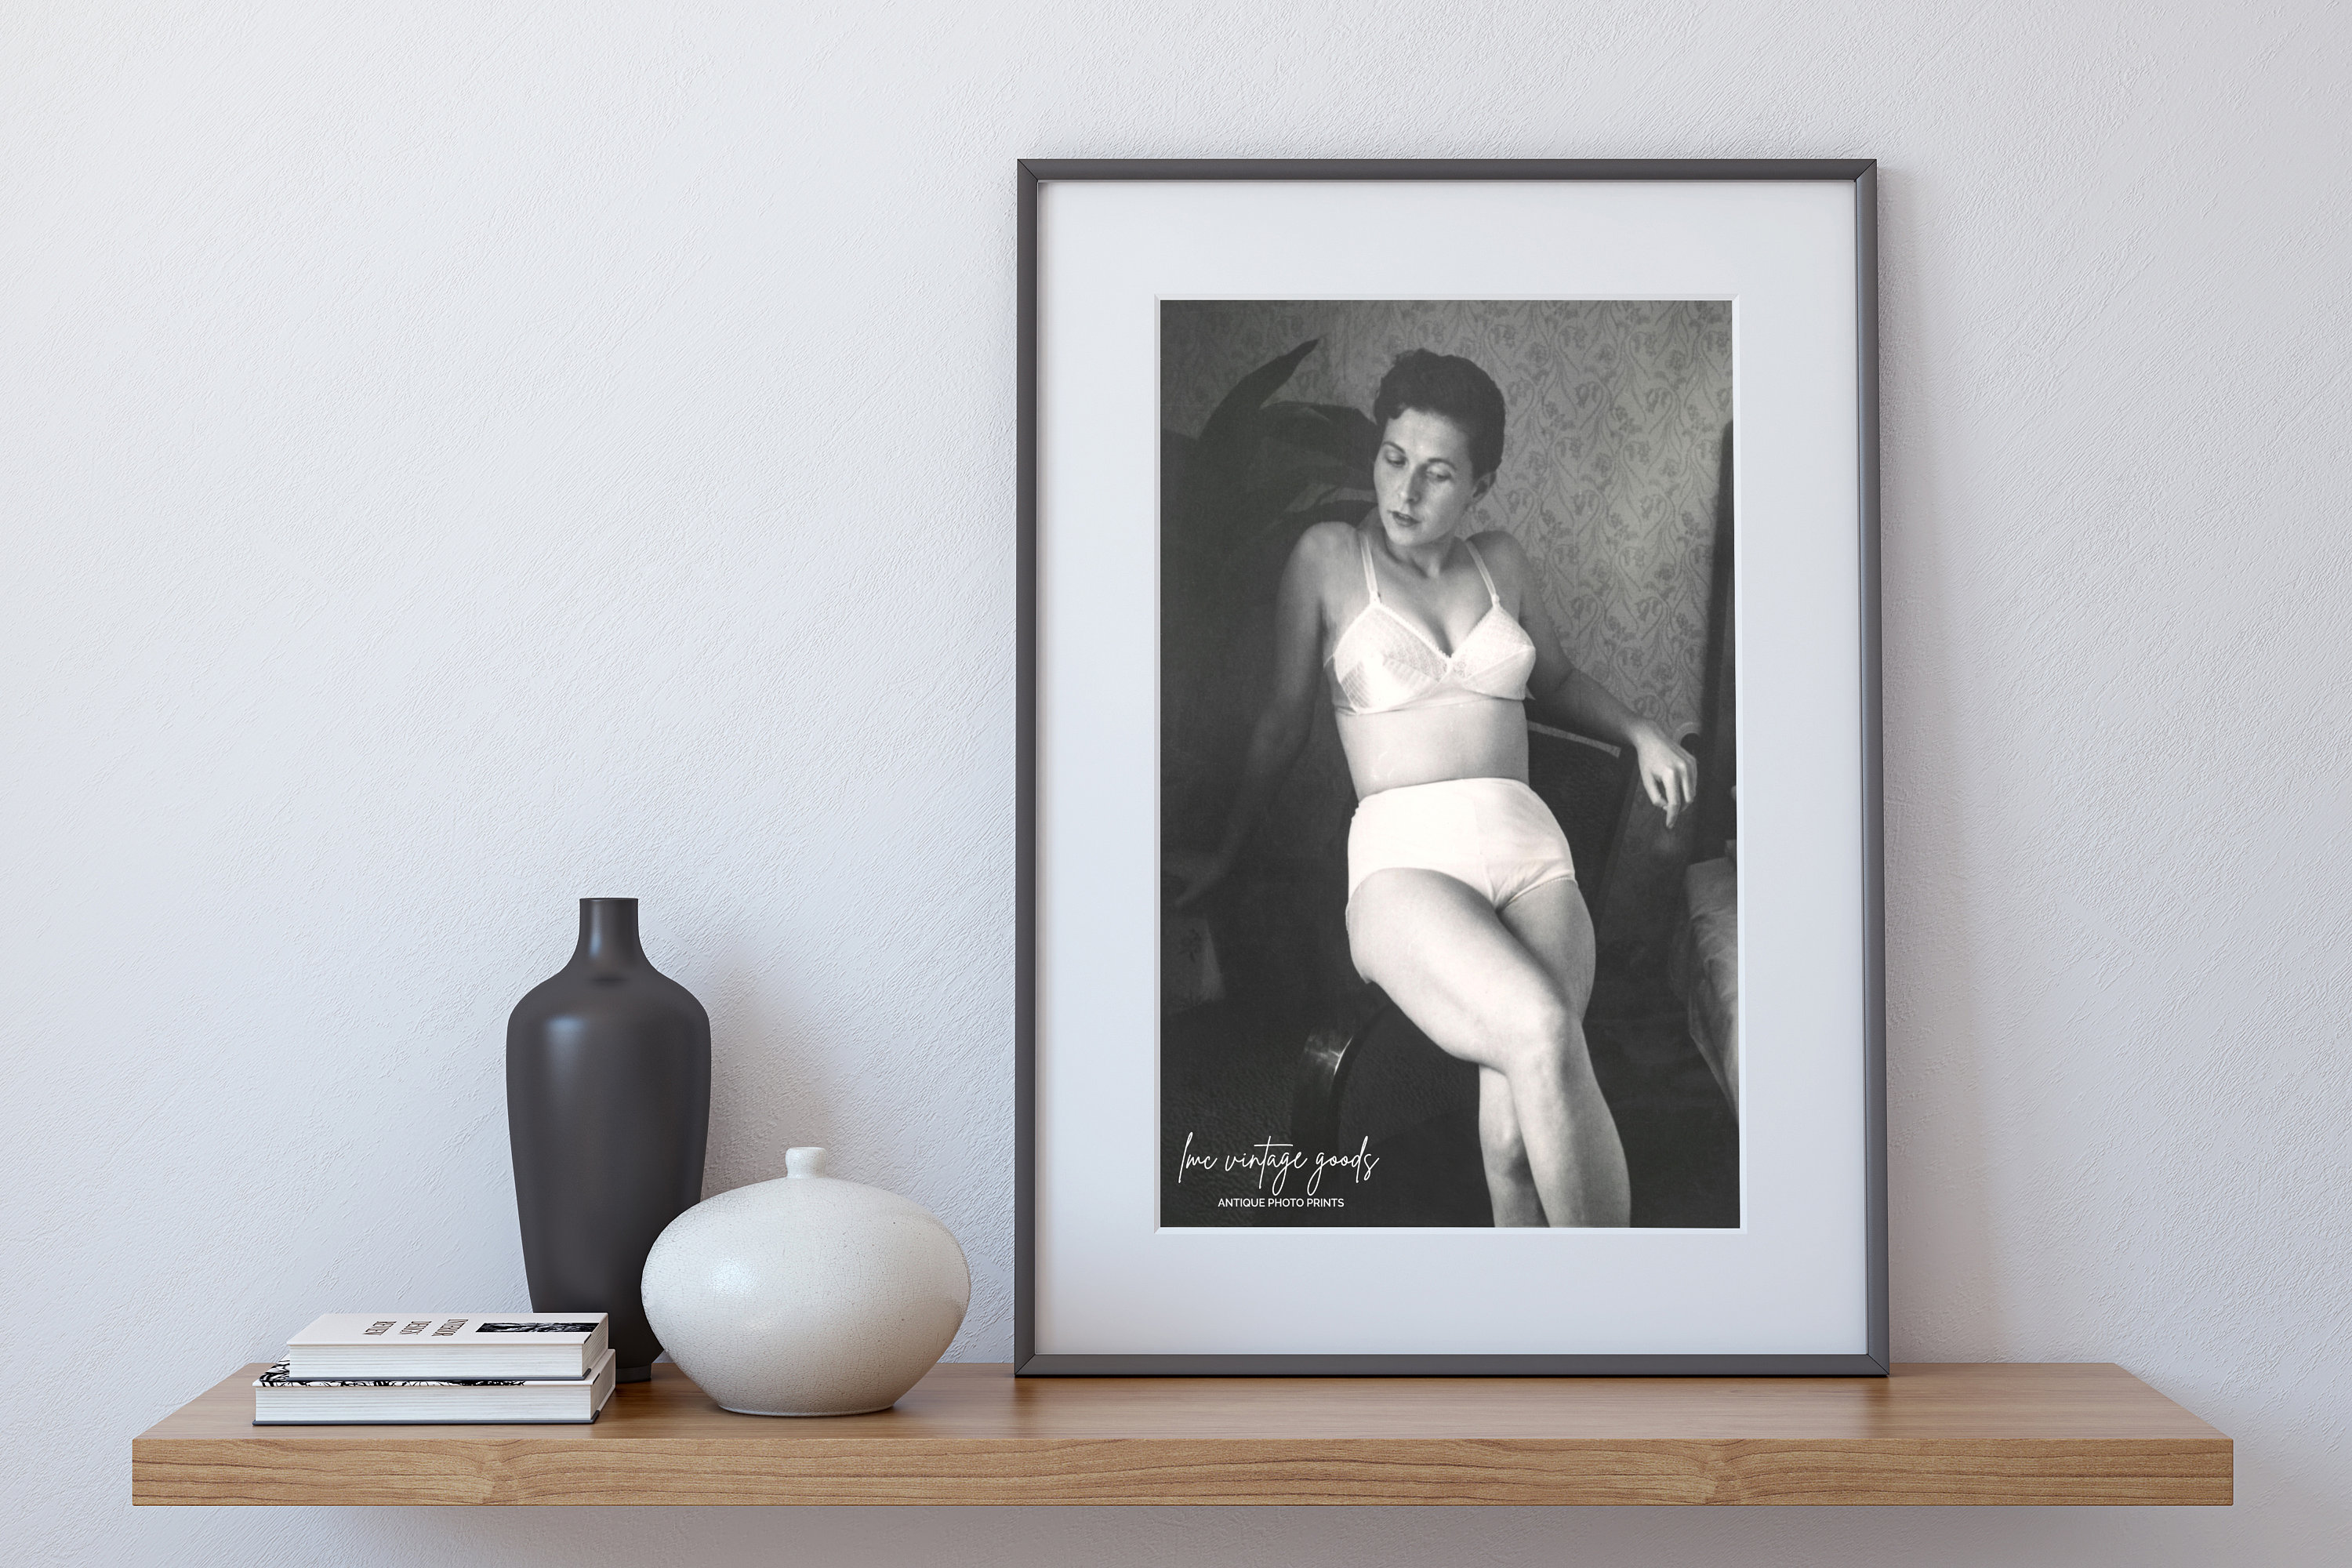 Women Posed in Lingerie Vintage Photo Print 1940s Bra Panties